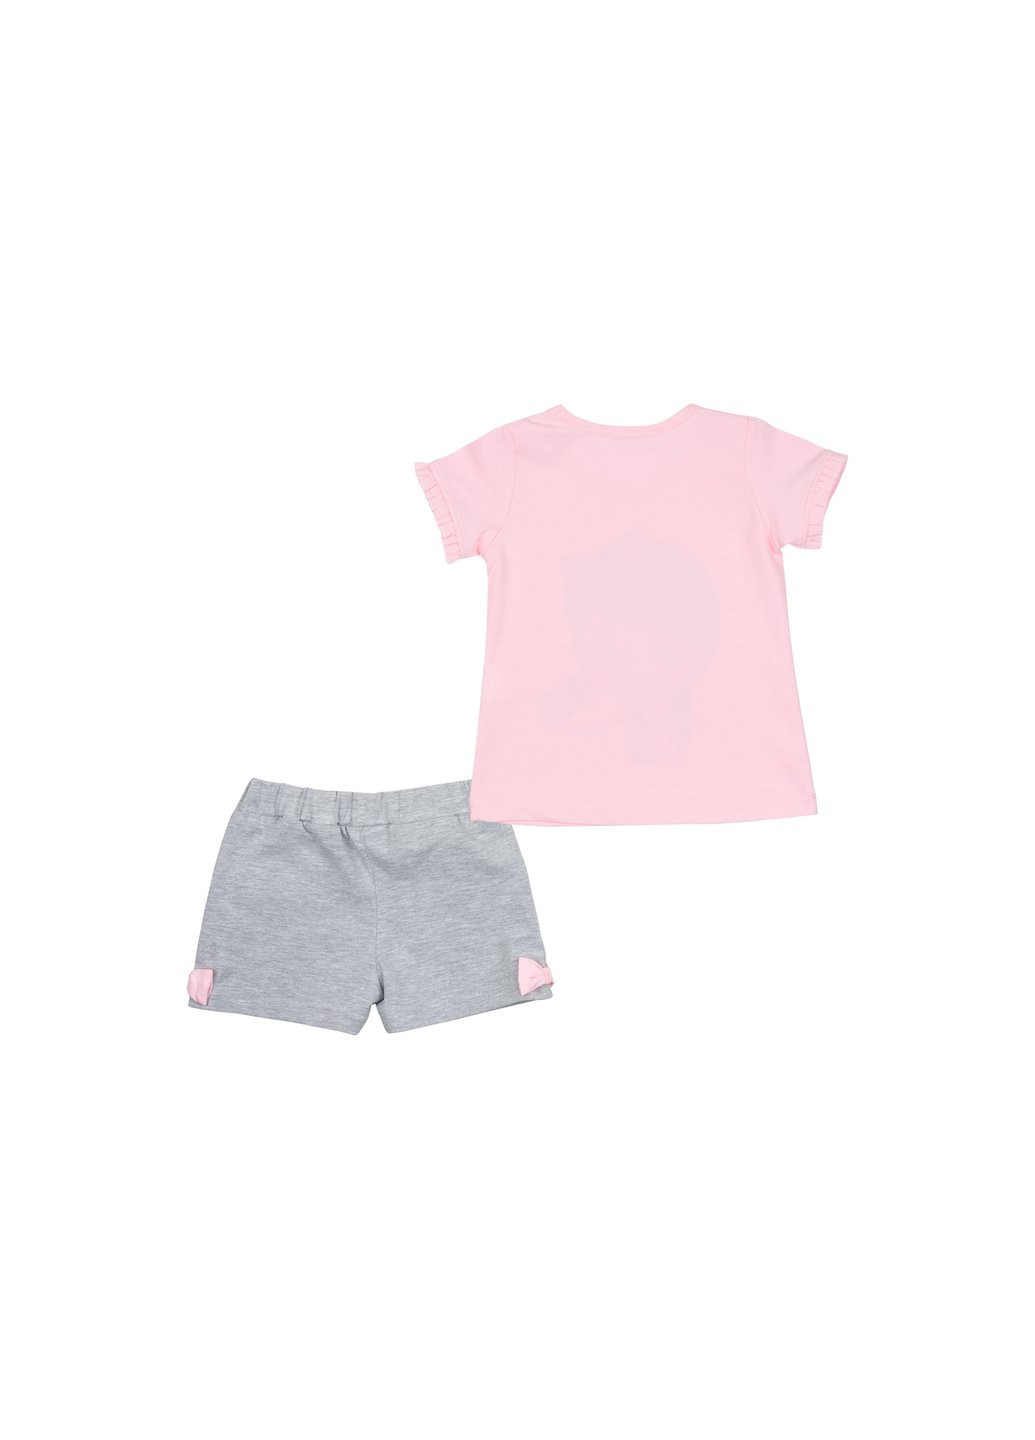 Комбинированный летний набор детской одежды с девочкой (12485-86g-pink) Breeze